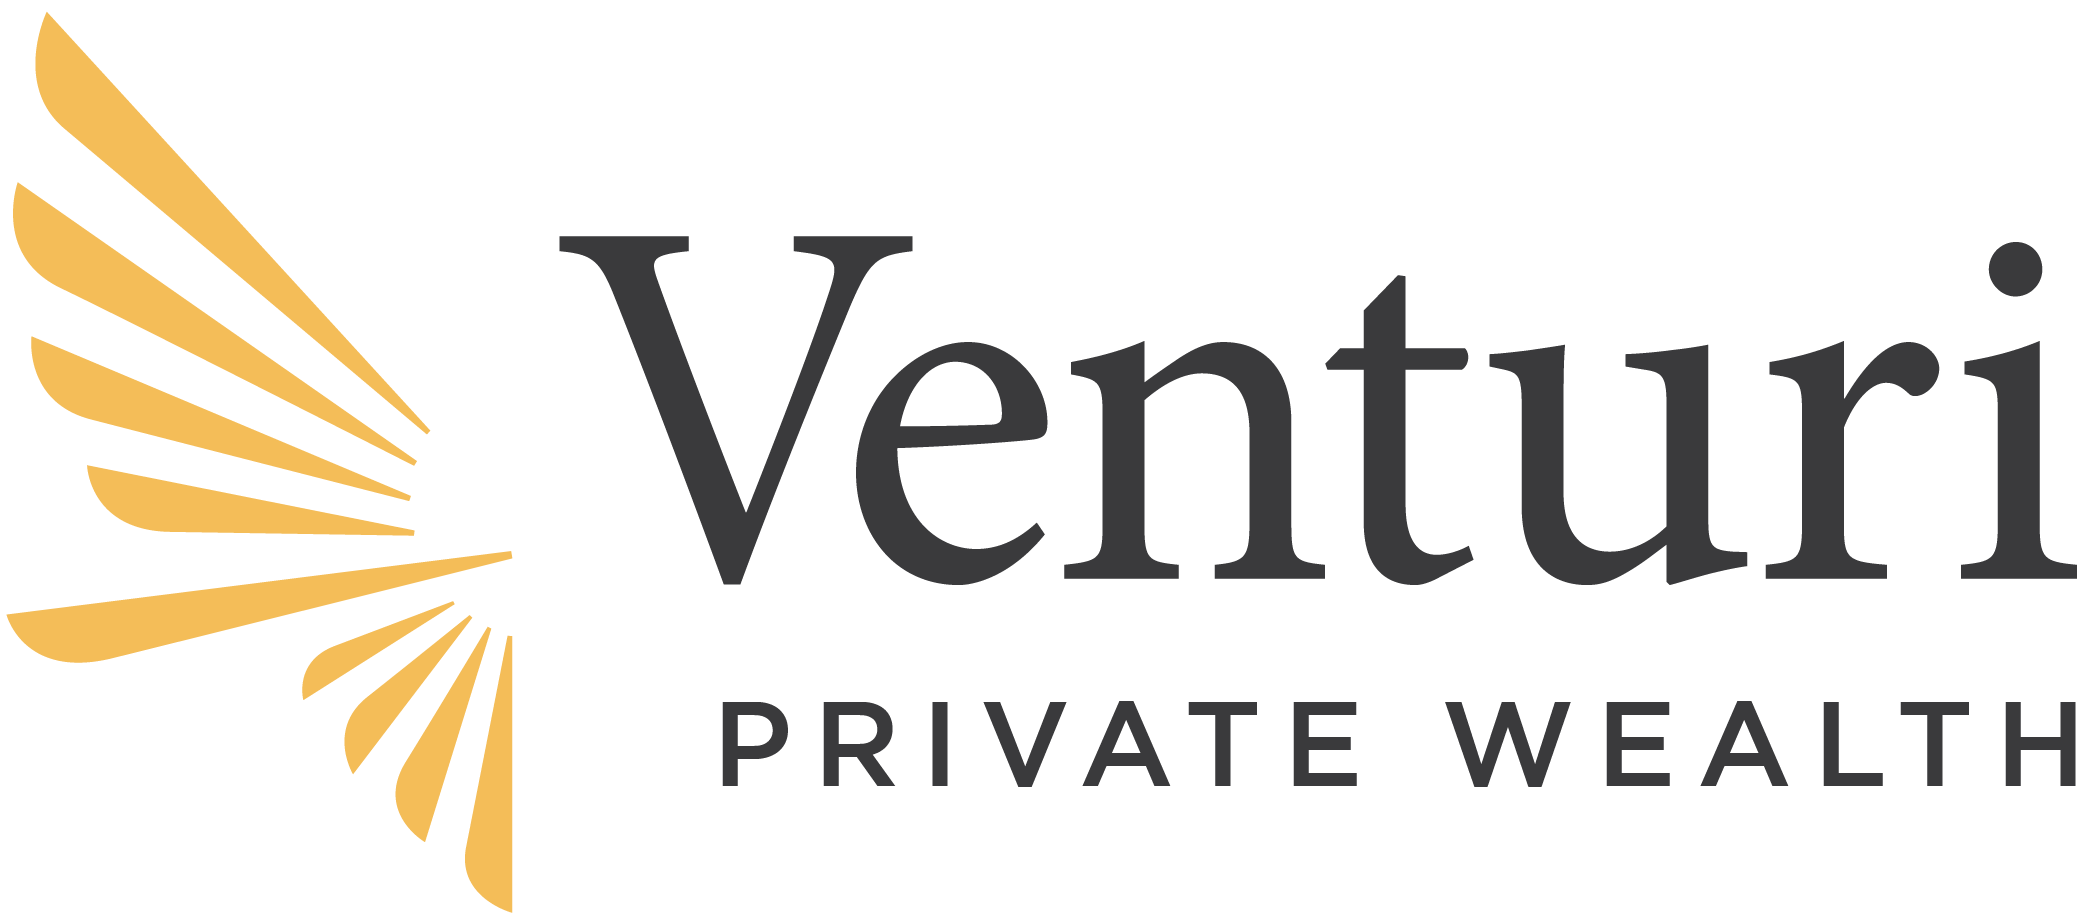 Wealth Logo - Venturi Private Wealth | Private Wealth Advisors in Austin Texas